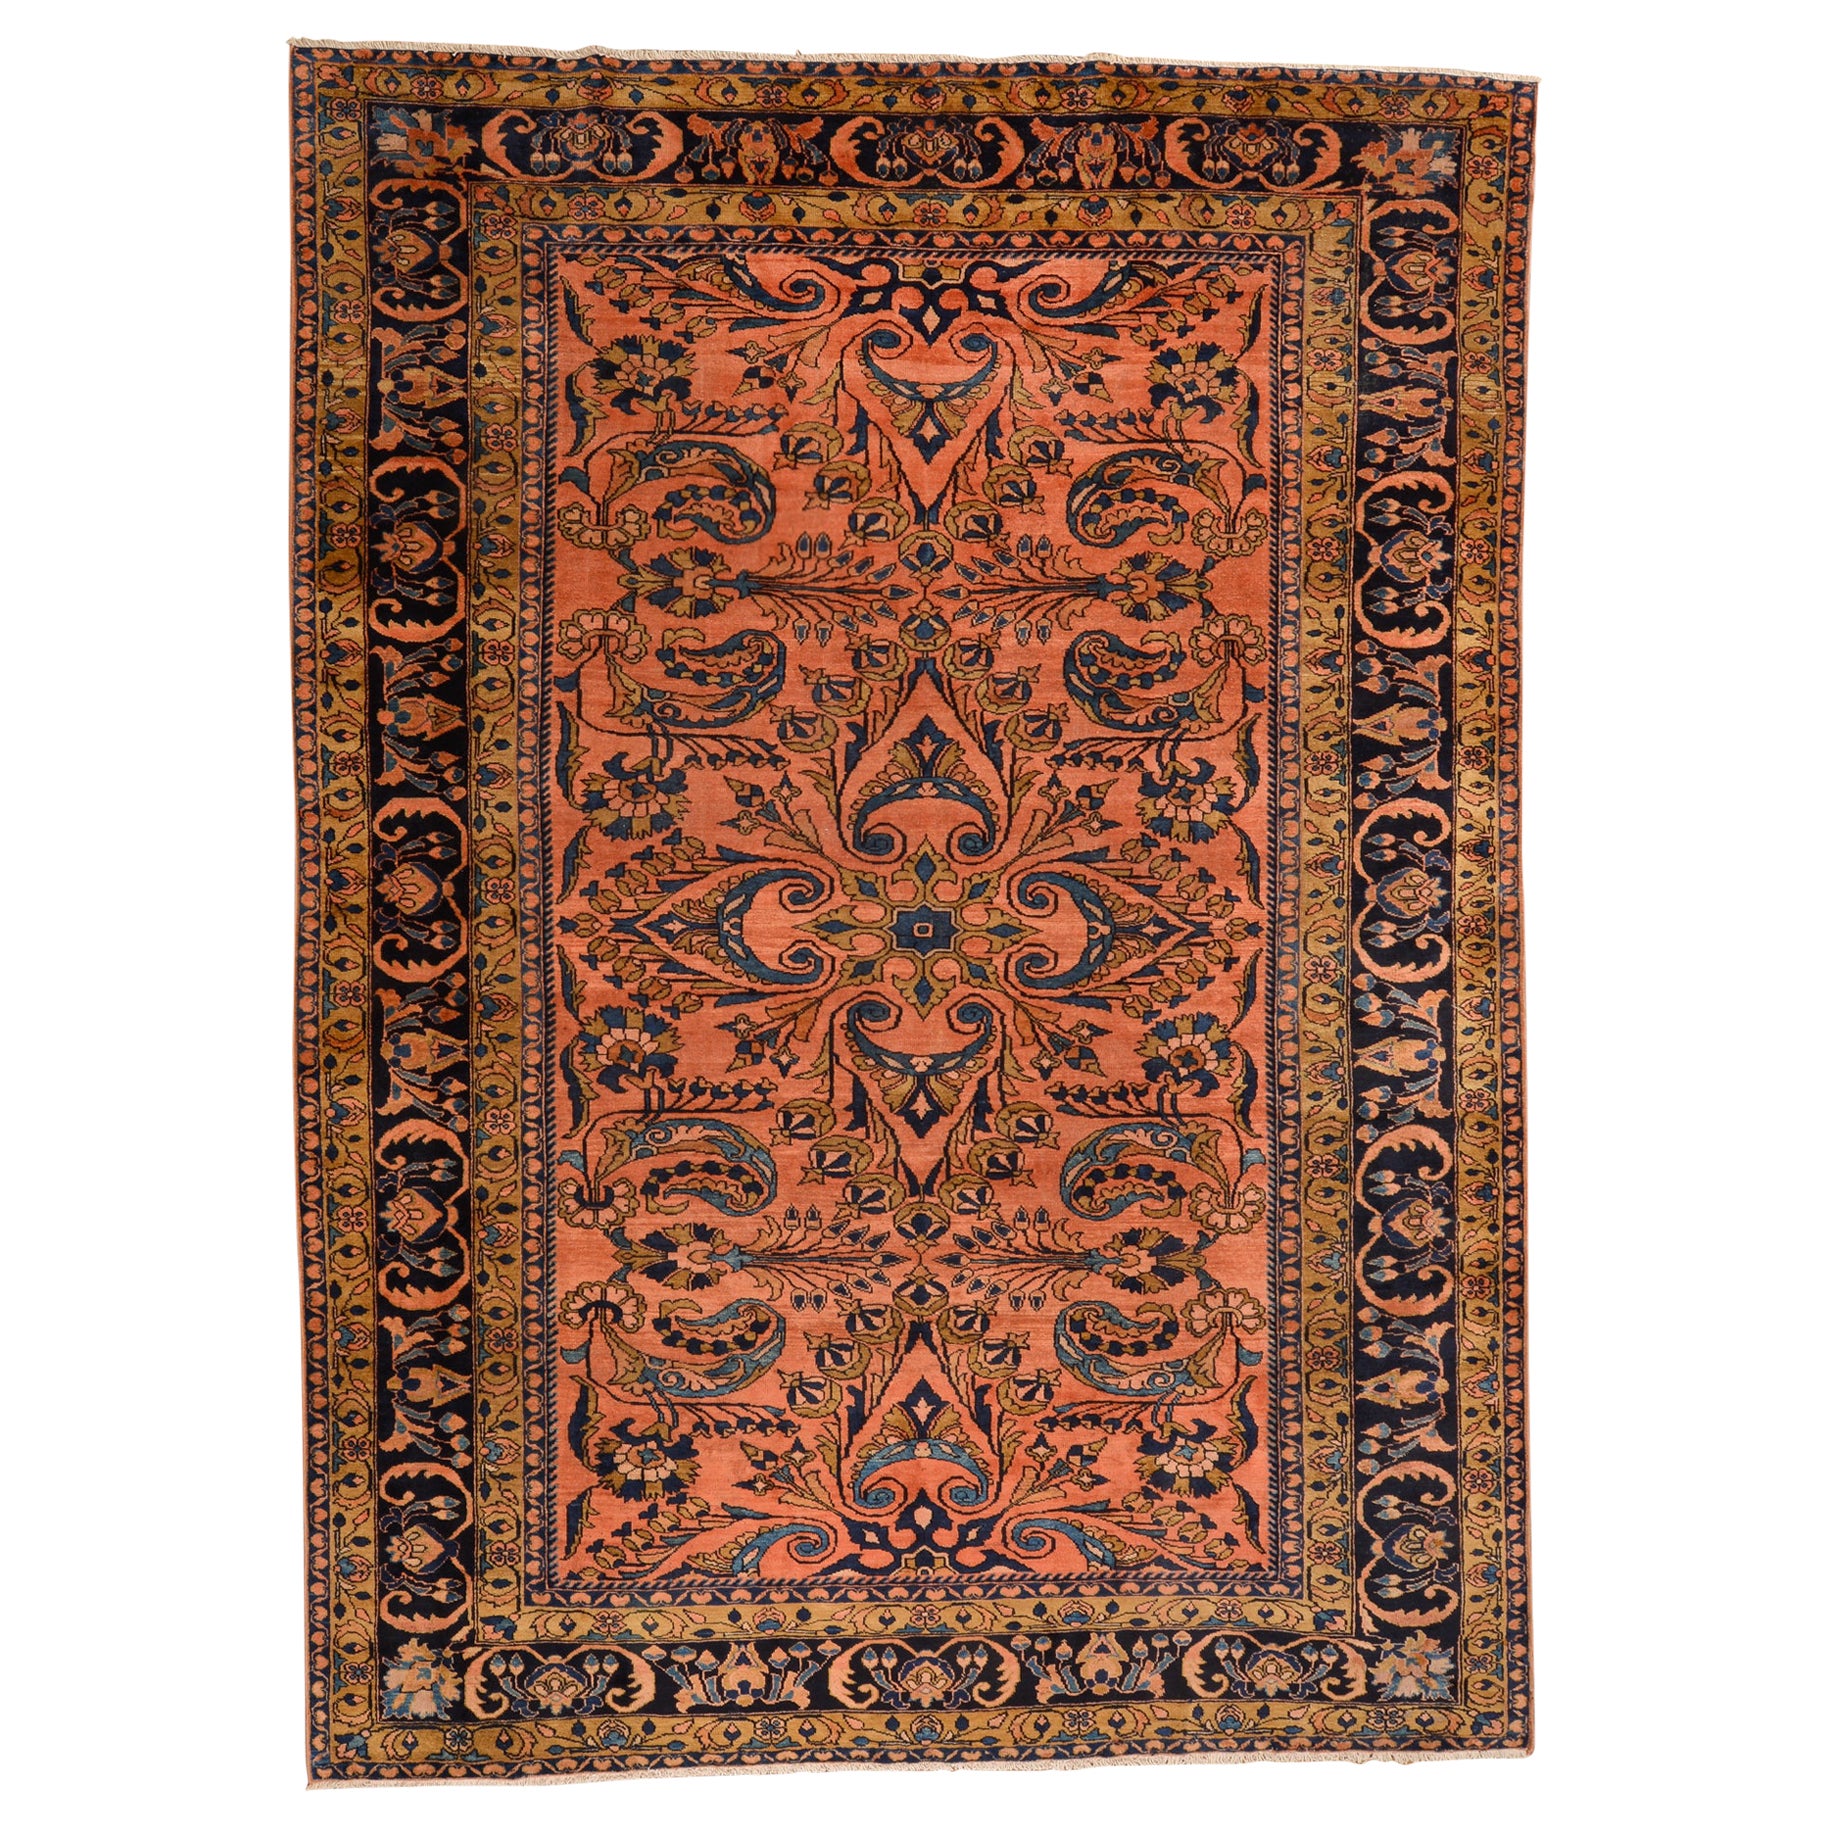 Antique Elegant Rare Oriental Carpet